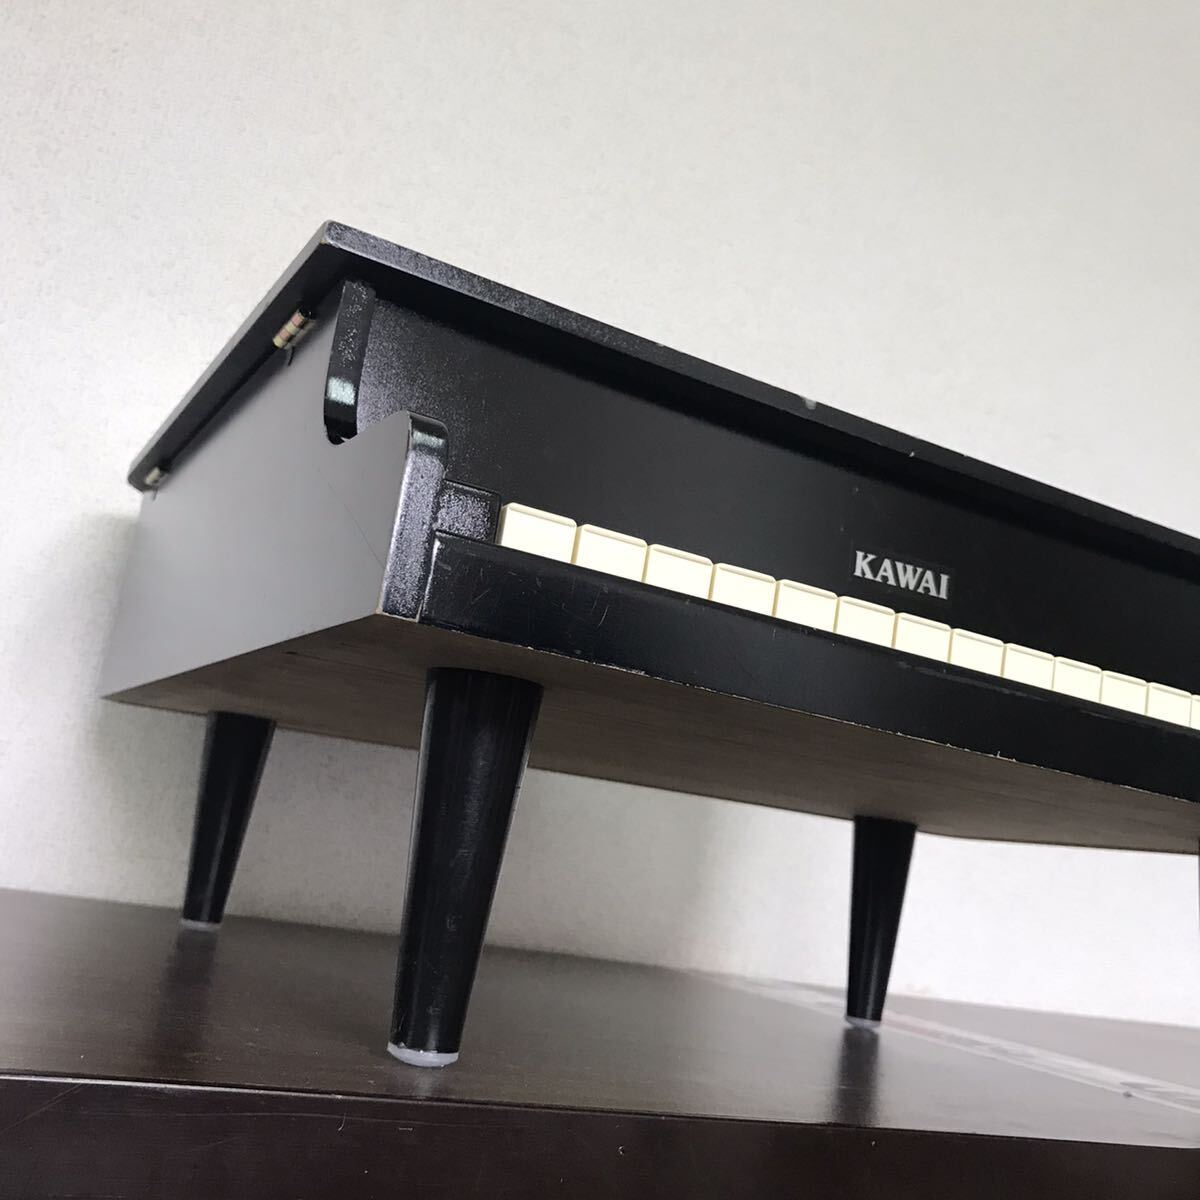 KAWAI Kawai Mini piano toy piano grand piano black river . musical instruments toy made in Japan /G-2